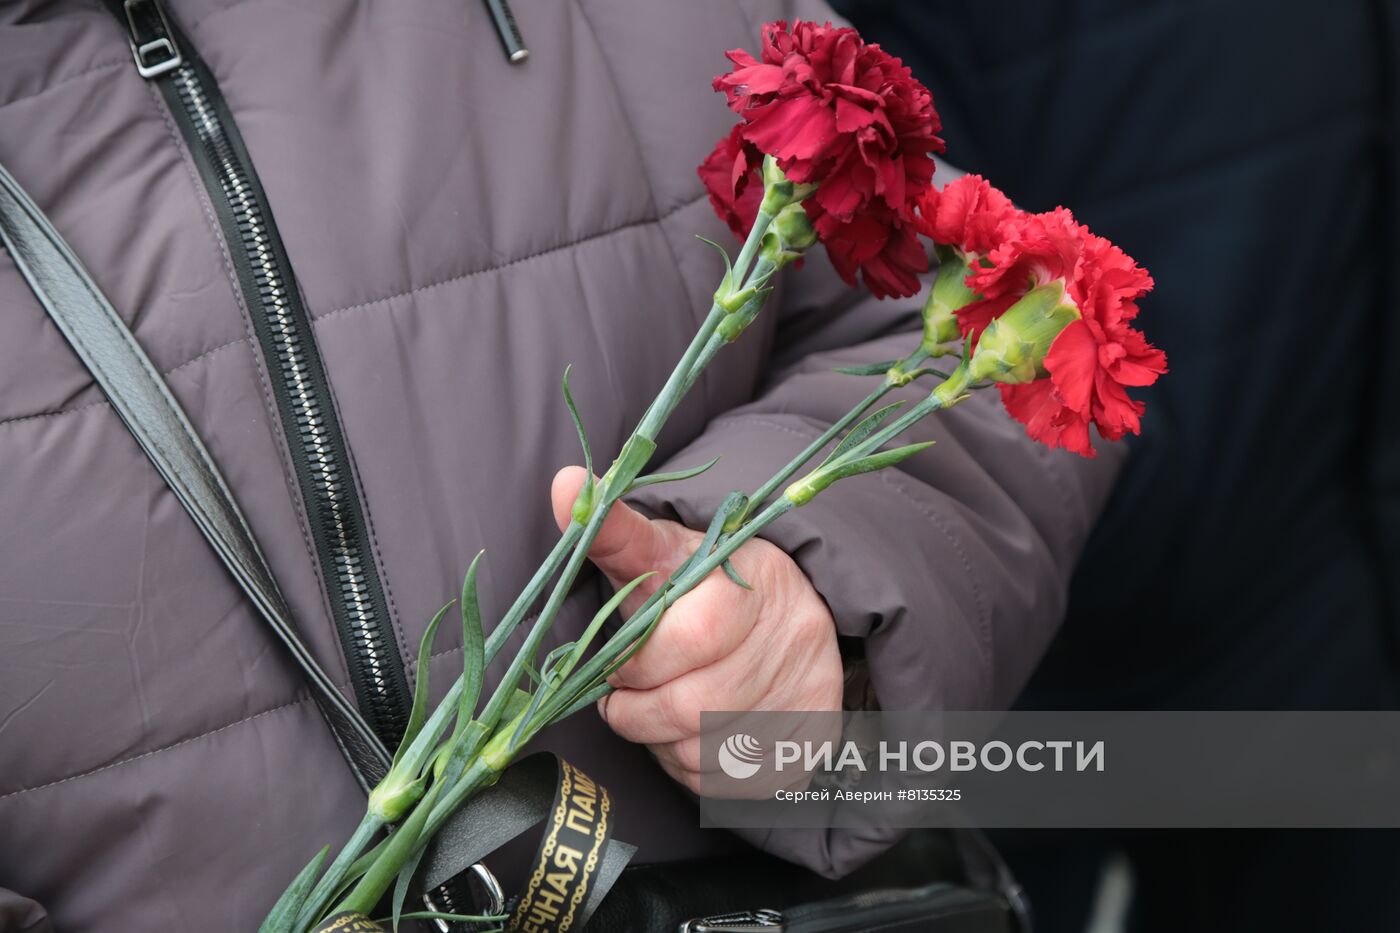 Прощание с командиром батальона "Спарта" В. Жогой в Донецке